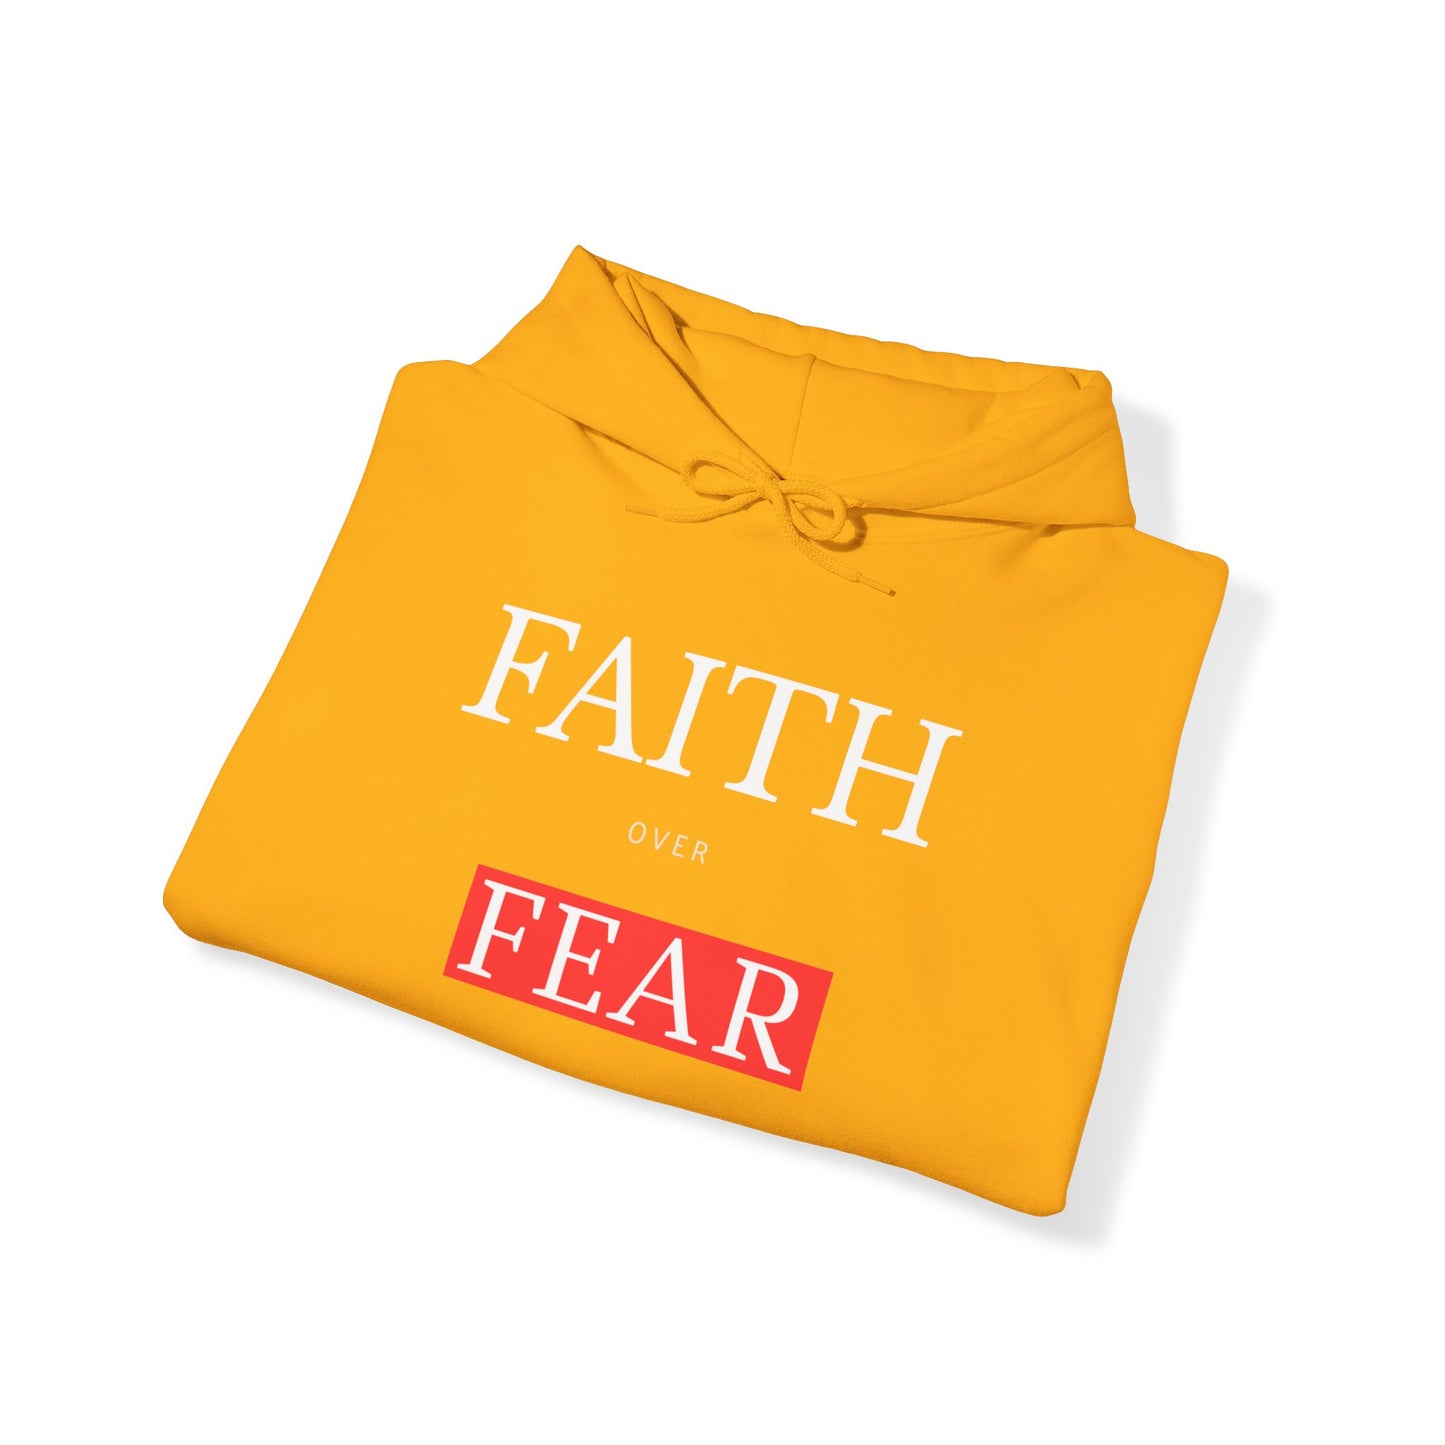 Faith Over Fear Unisex Heavy Blend™ Hooded Sweatshirt